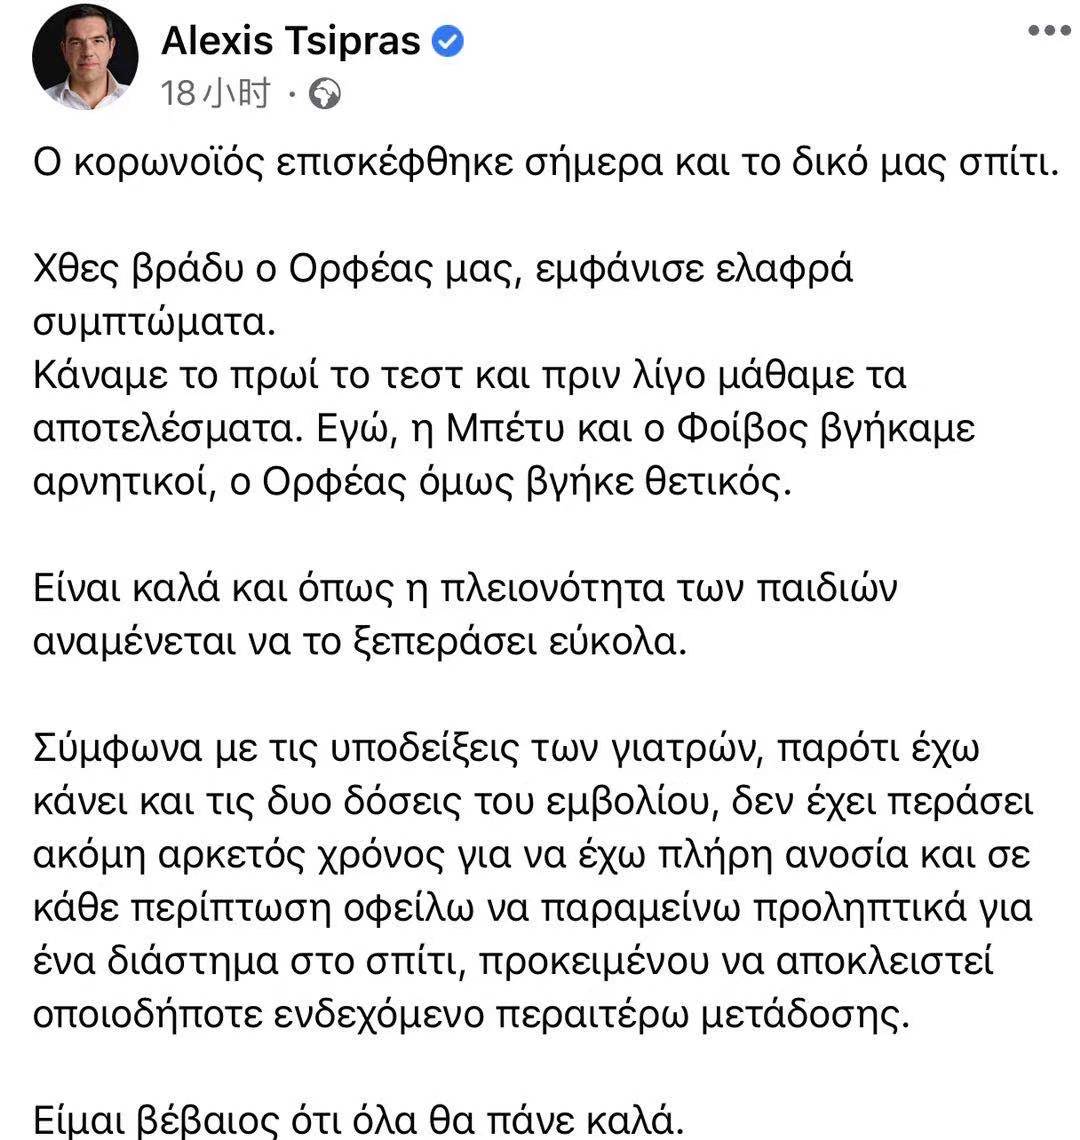 希腊前总理齐普拉斯之子新冠病毒测试呈阳性